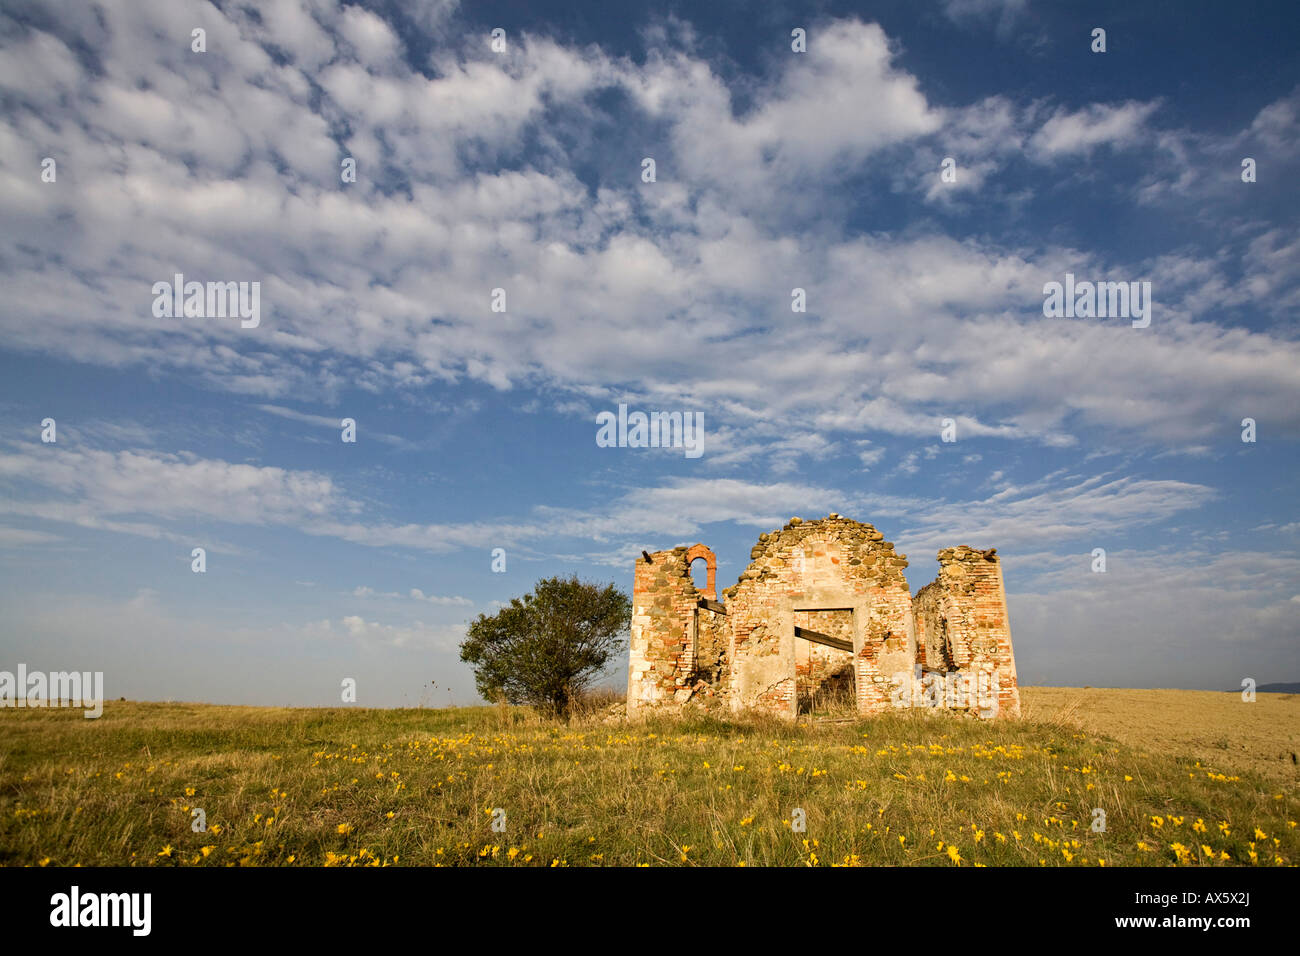 Ruines de la ferme, Toscane, Italie, Europe Banque D'Images